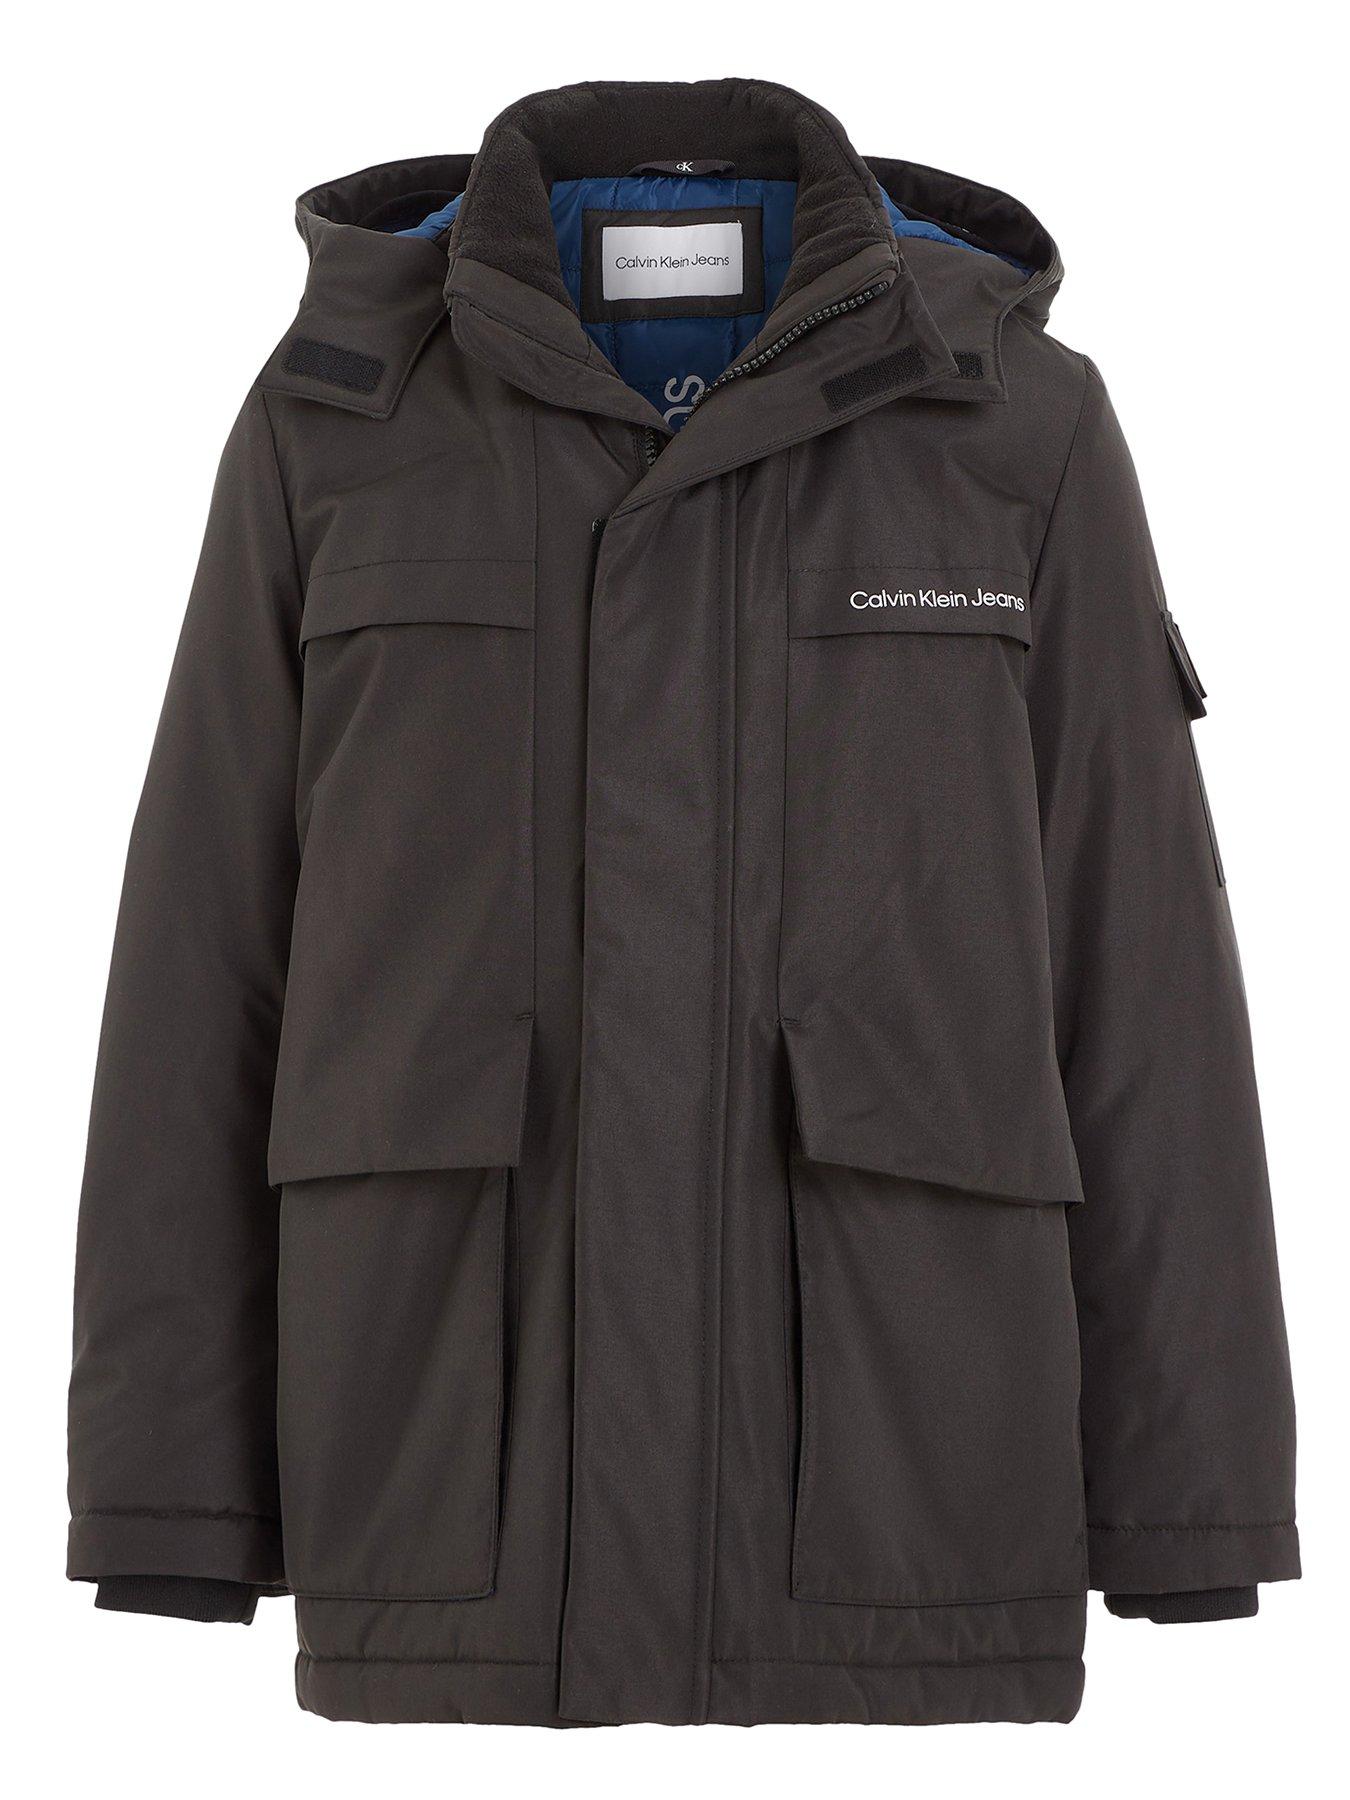 Crivit Pro Mens Waterproof Winter Jacket Warm Coat Ski Hooded size 46 Black